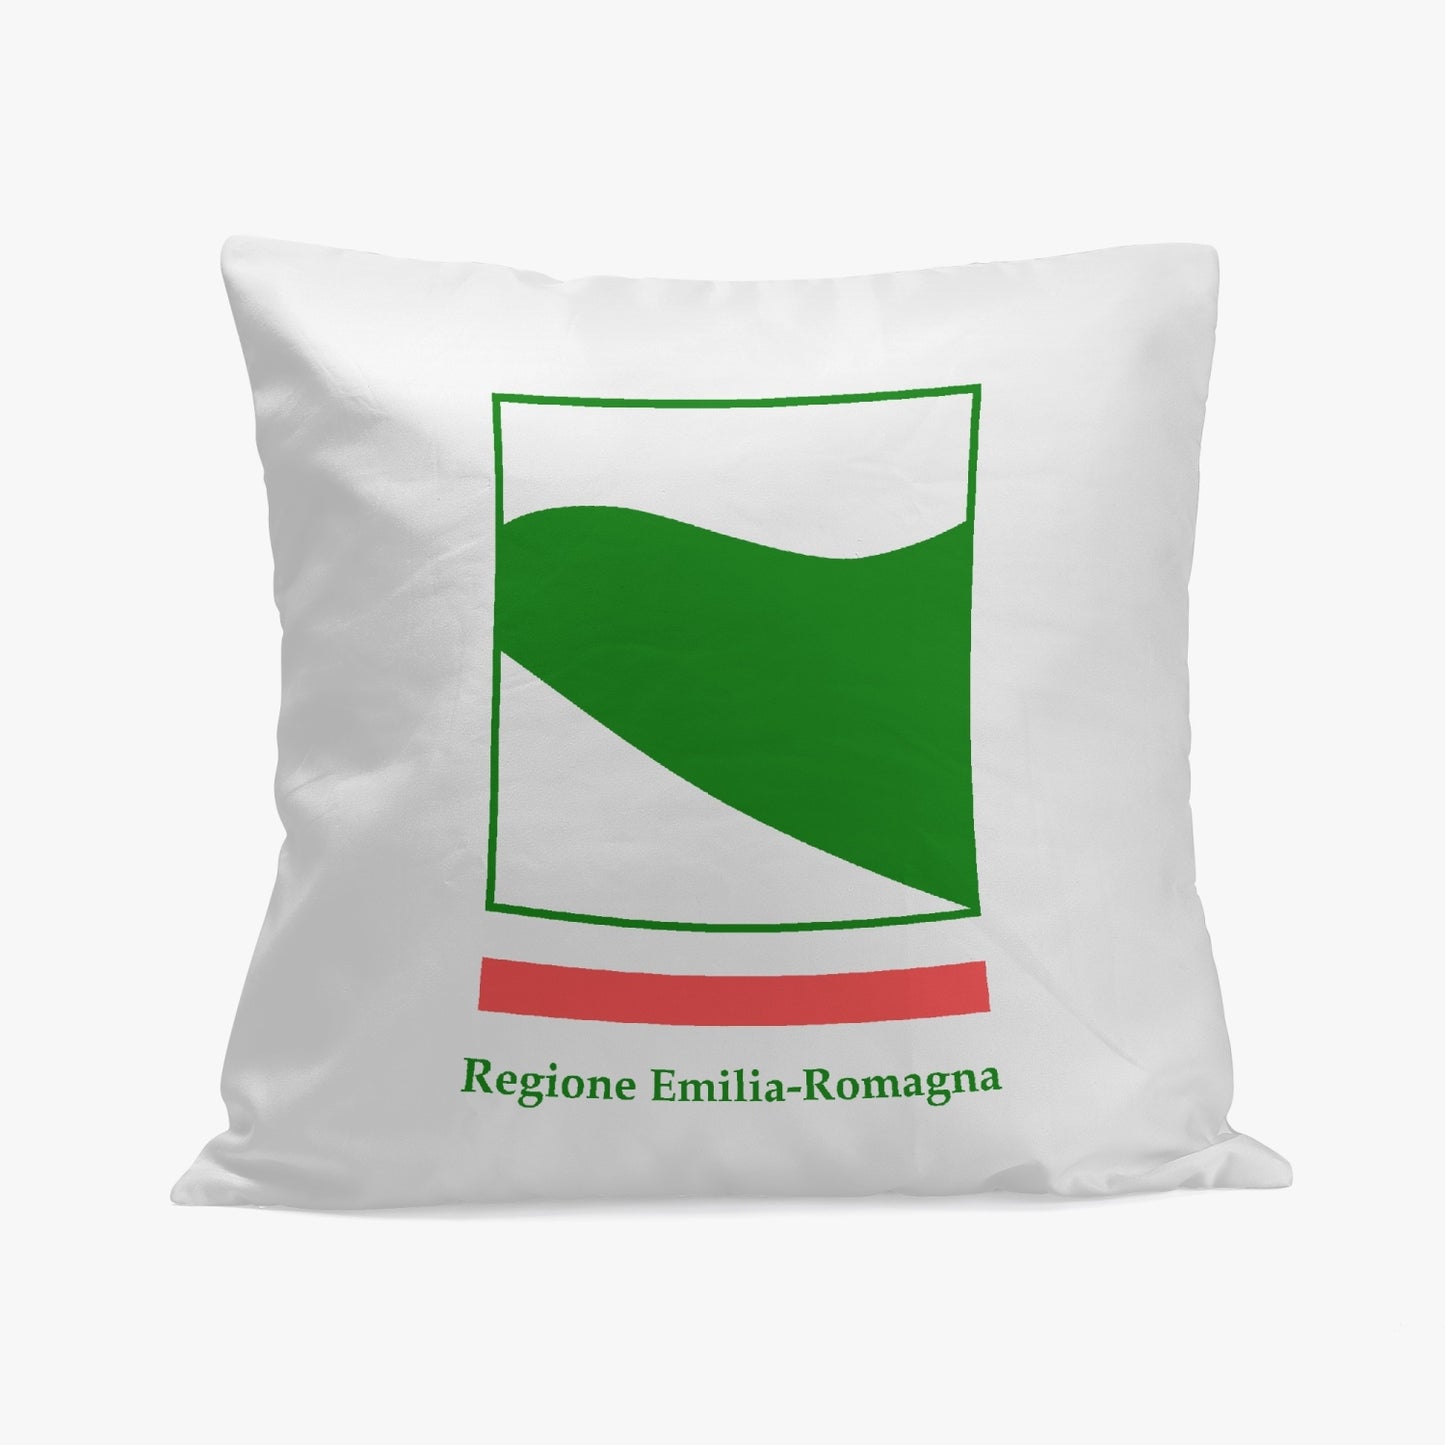 Emilia-Romagna Pillow Cover